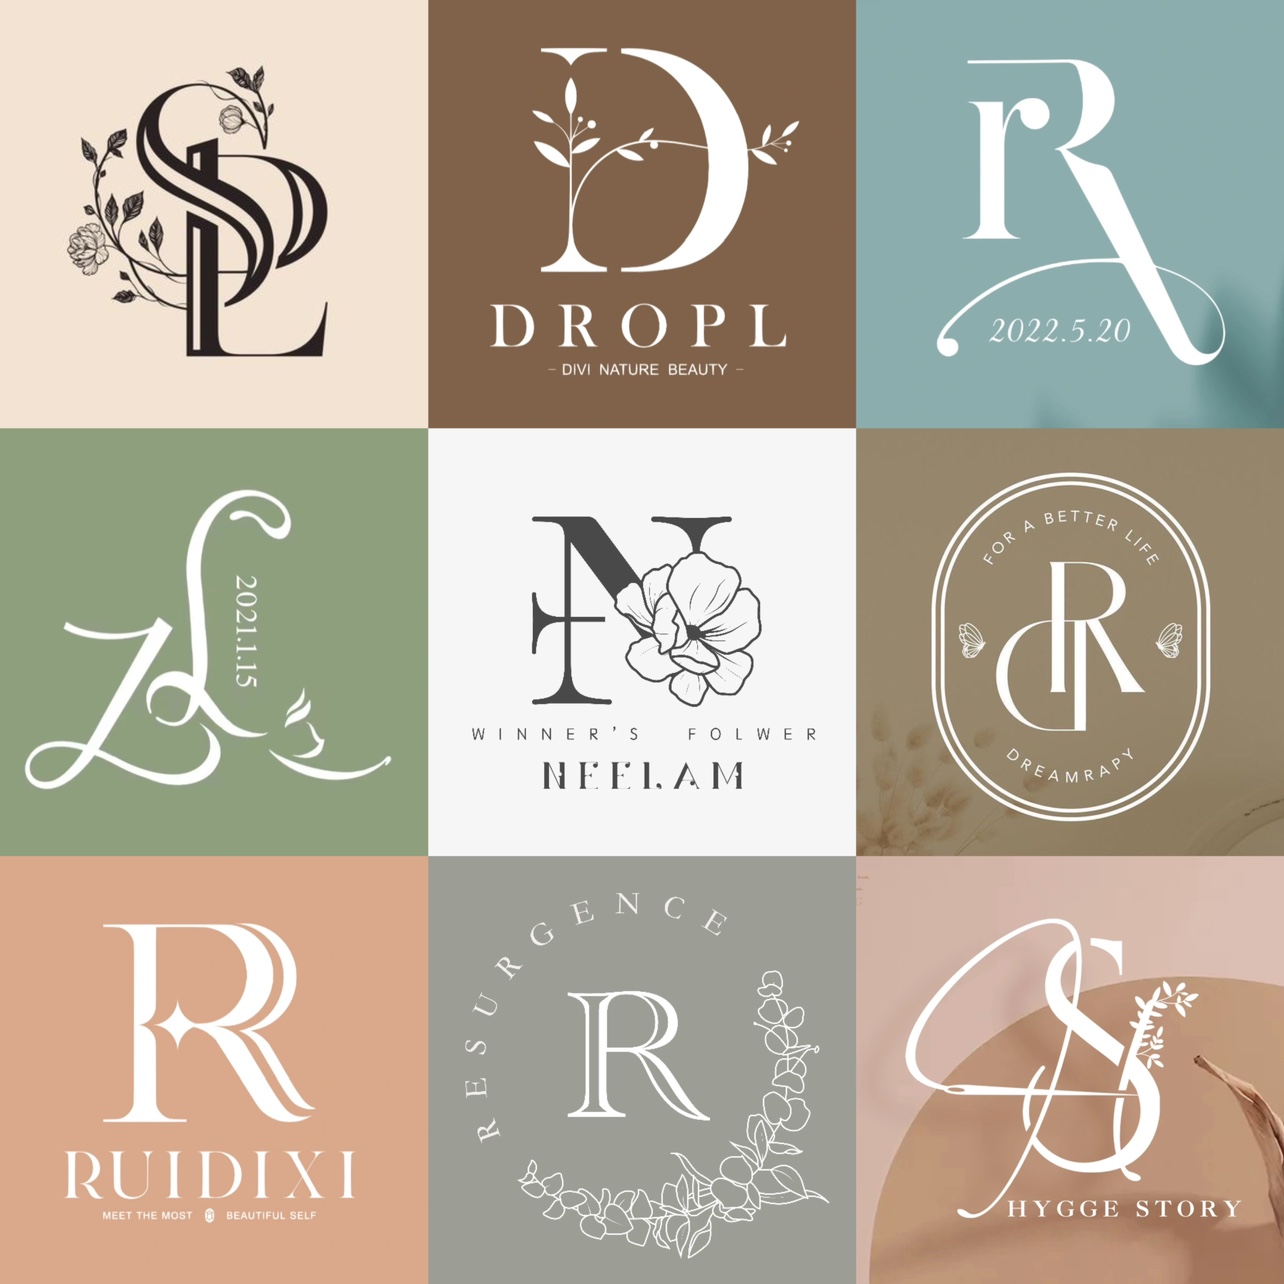 logo设计原创品牌字母美业美容婚礼结婚标志英文字体水印商标定制